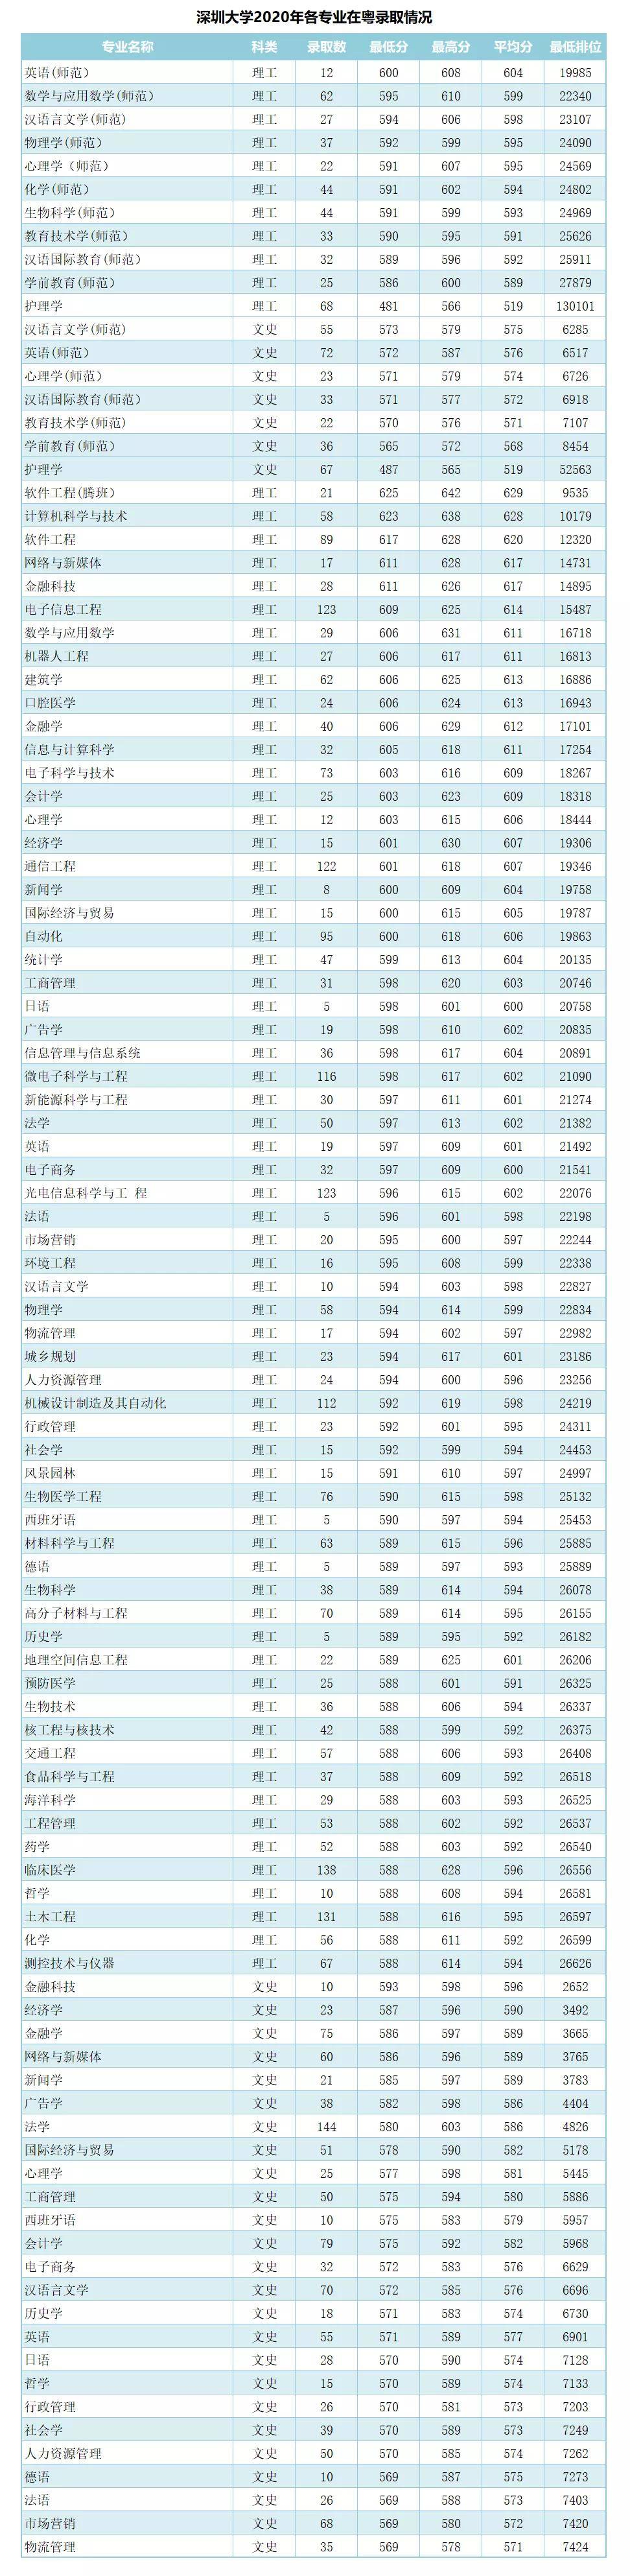 2020年广东高考排名_8所广东知名高校2020年录取人数、分数线及排名汇总